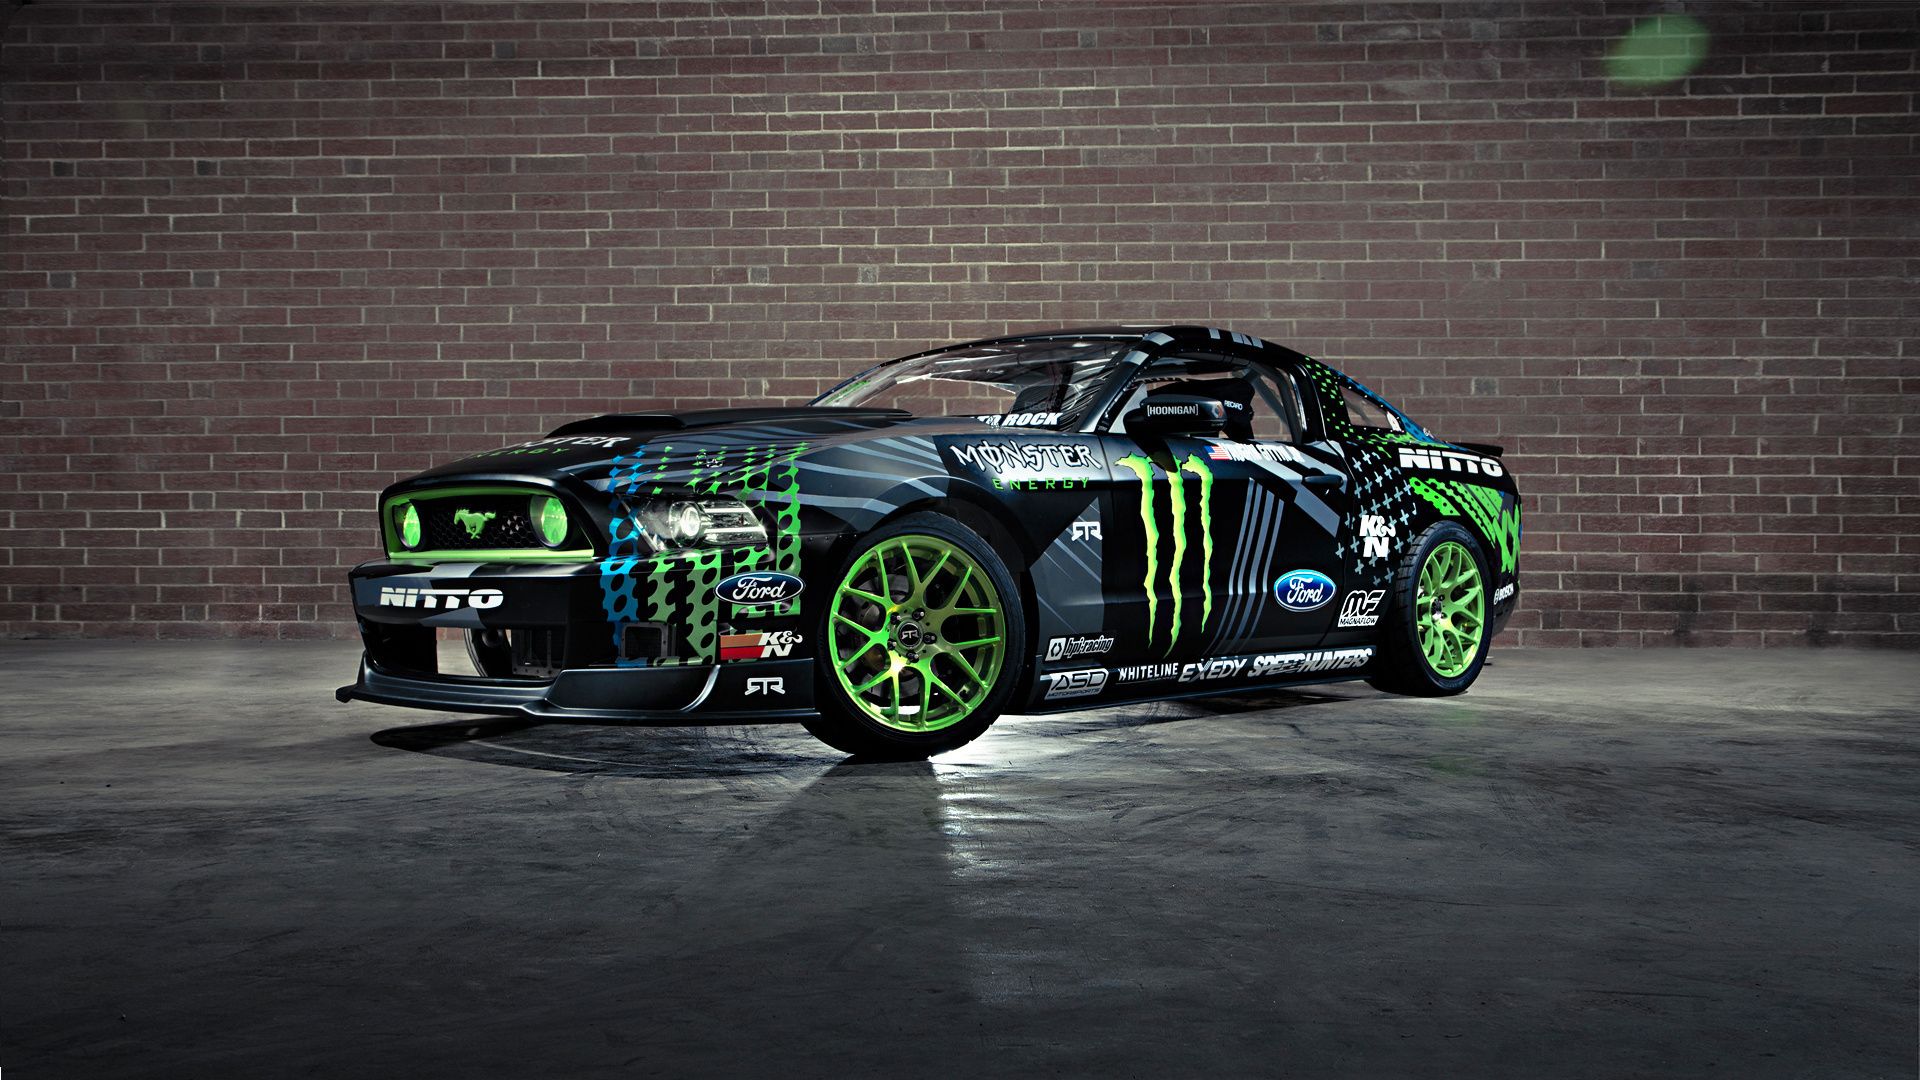 Wallpaper. Cars. photo. picture. drift, Mustang, vaughn gittin jr, monster energy, rtr